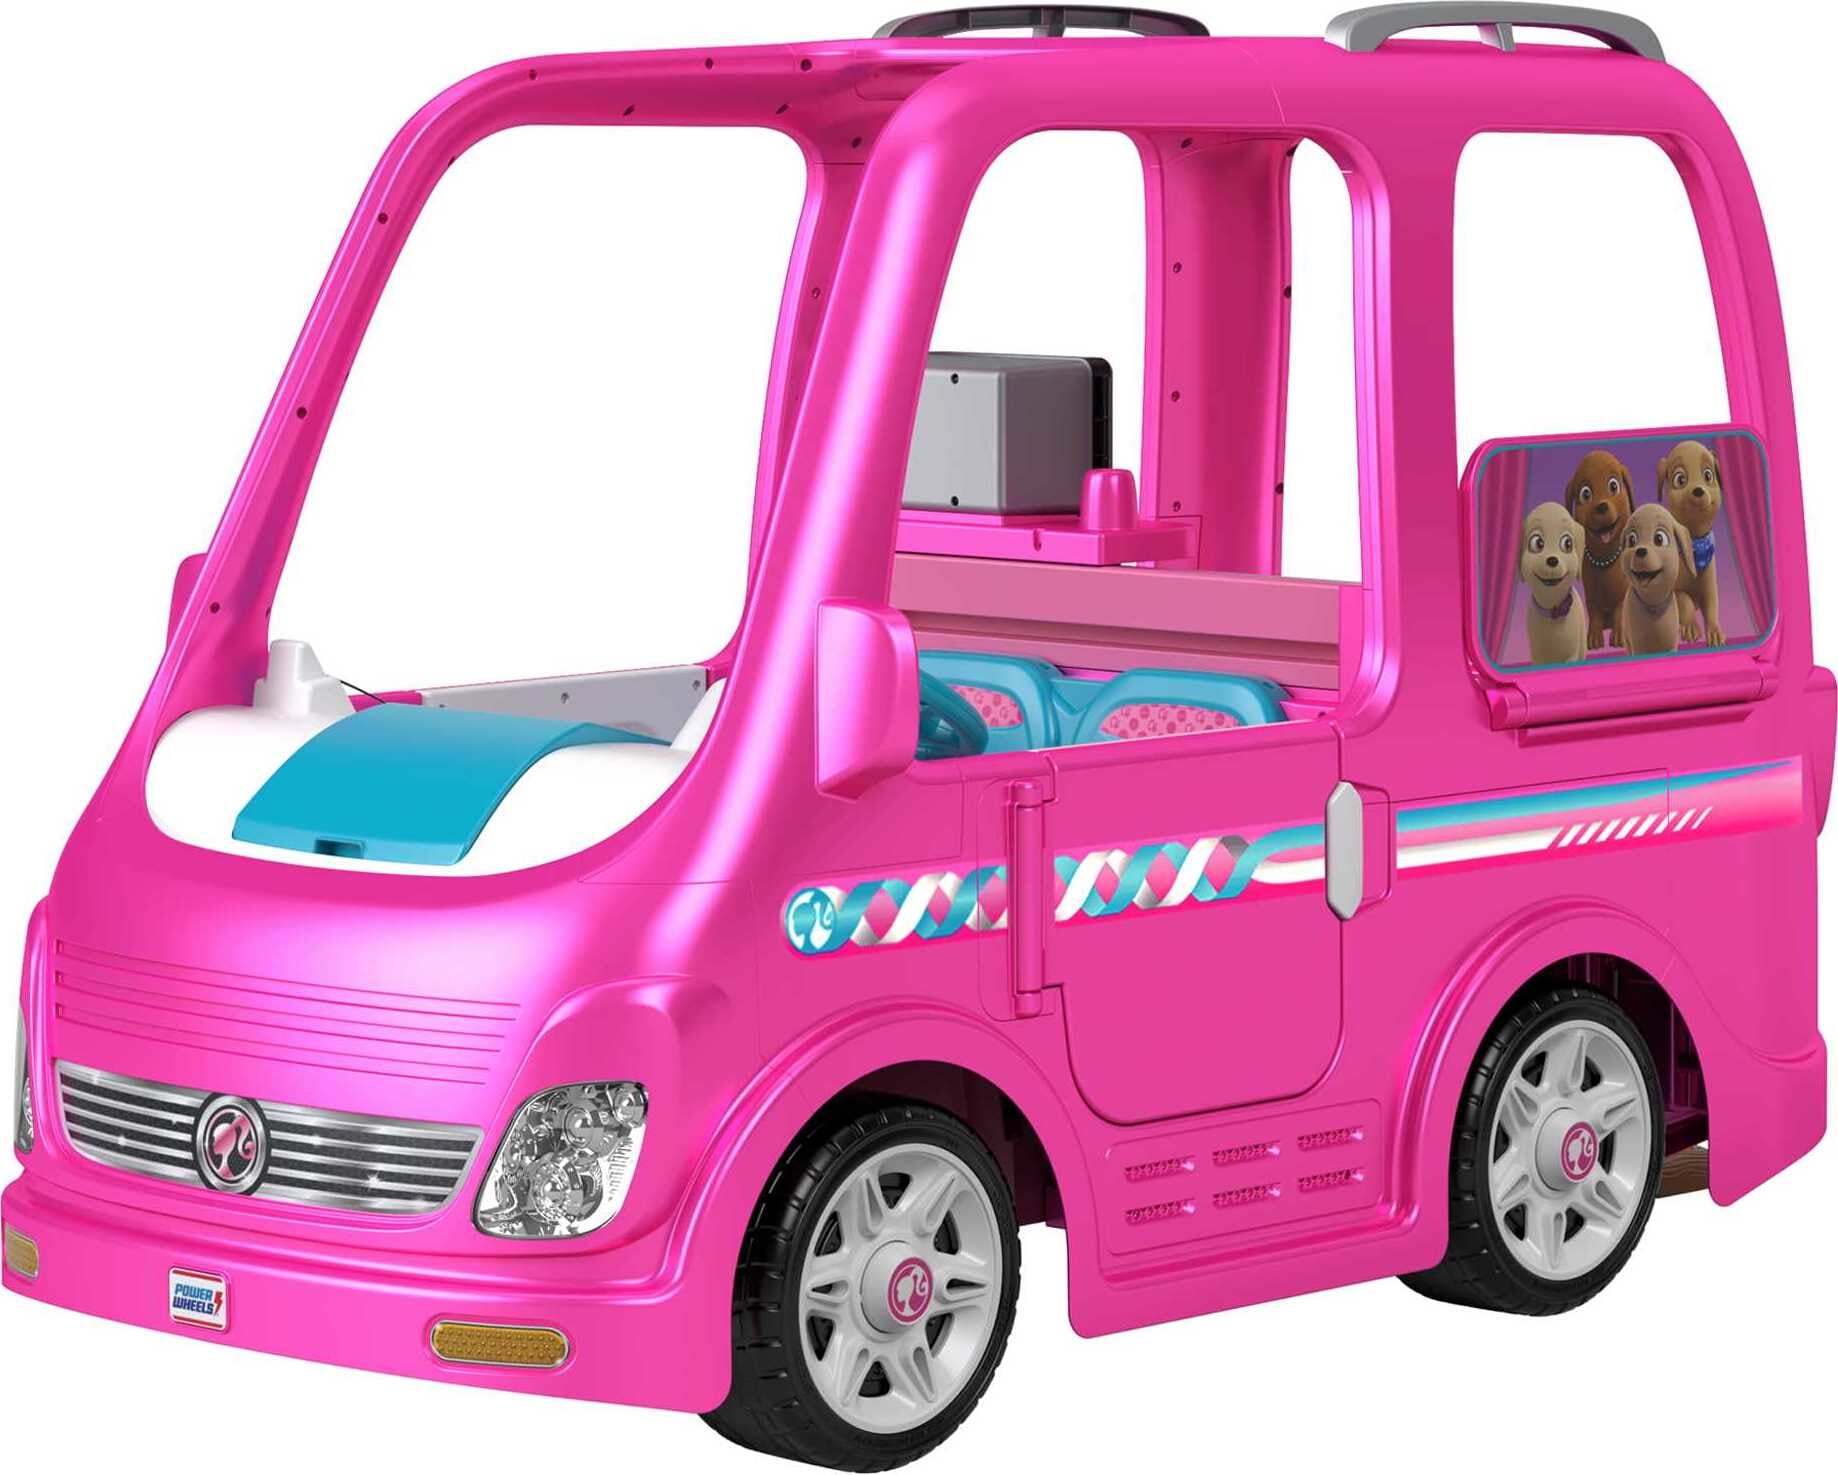 Camping-car Barbie 3 en 1 — Juguetesland